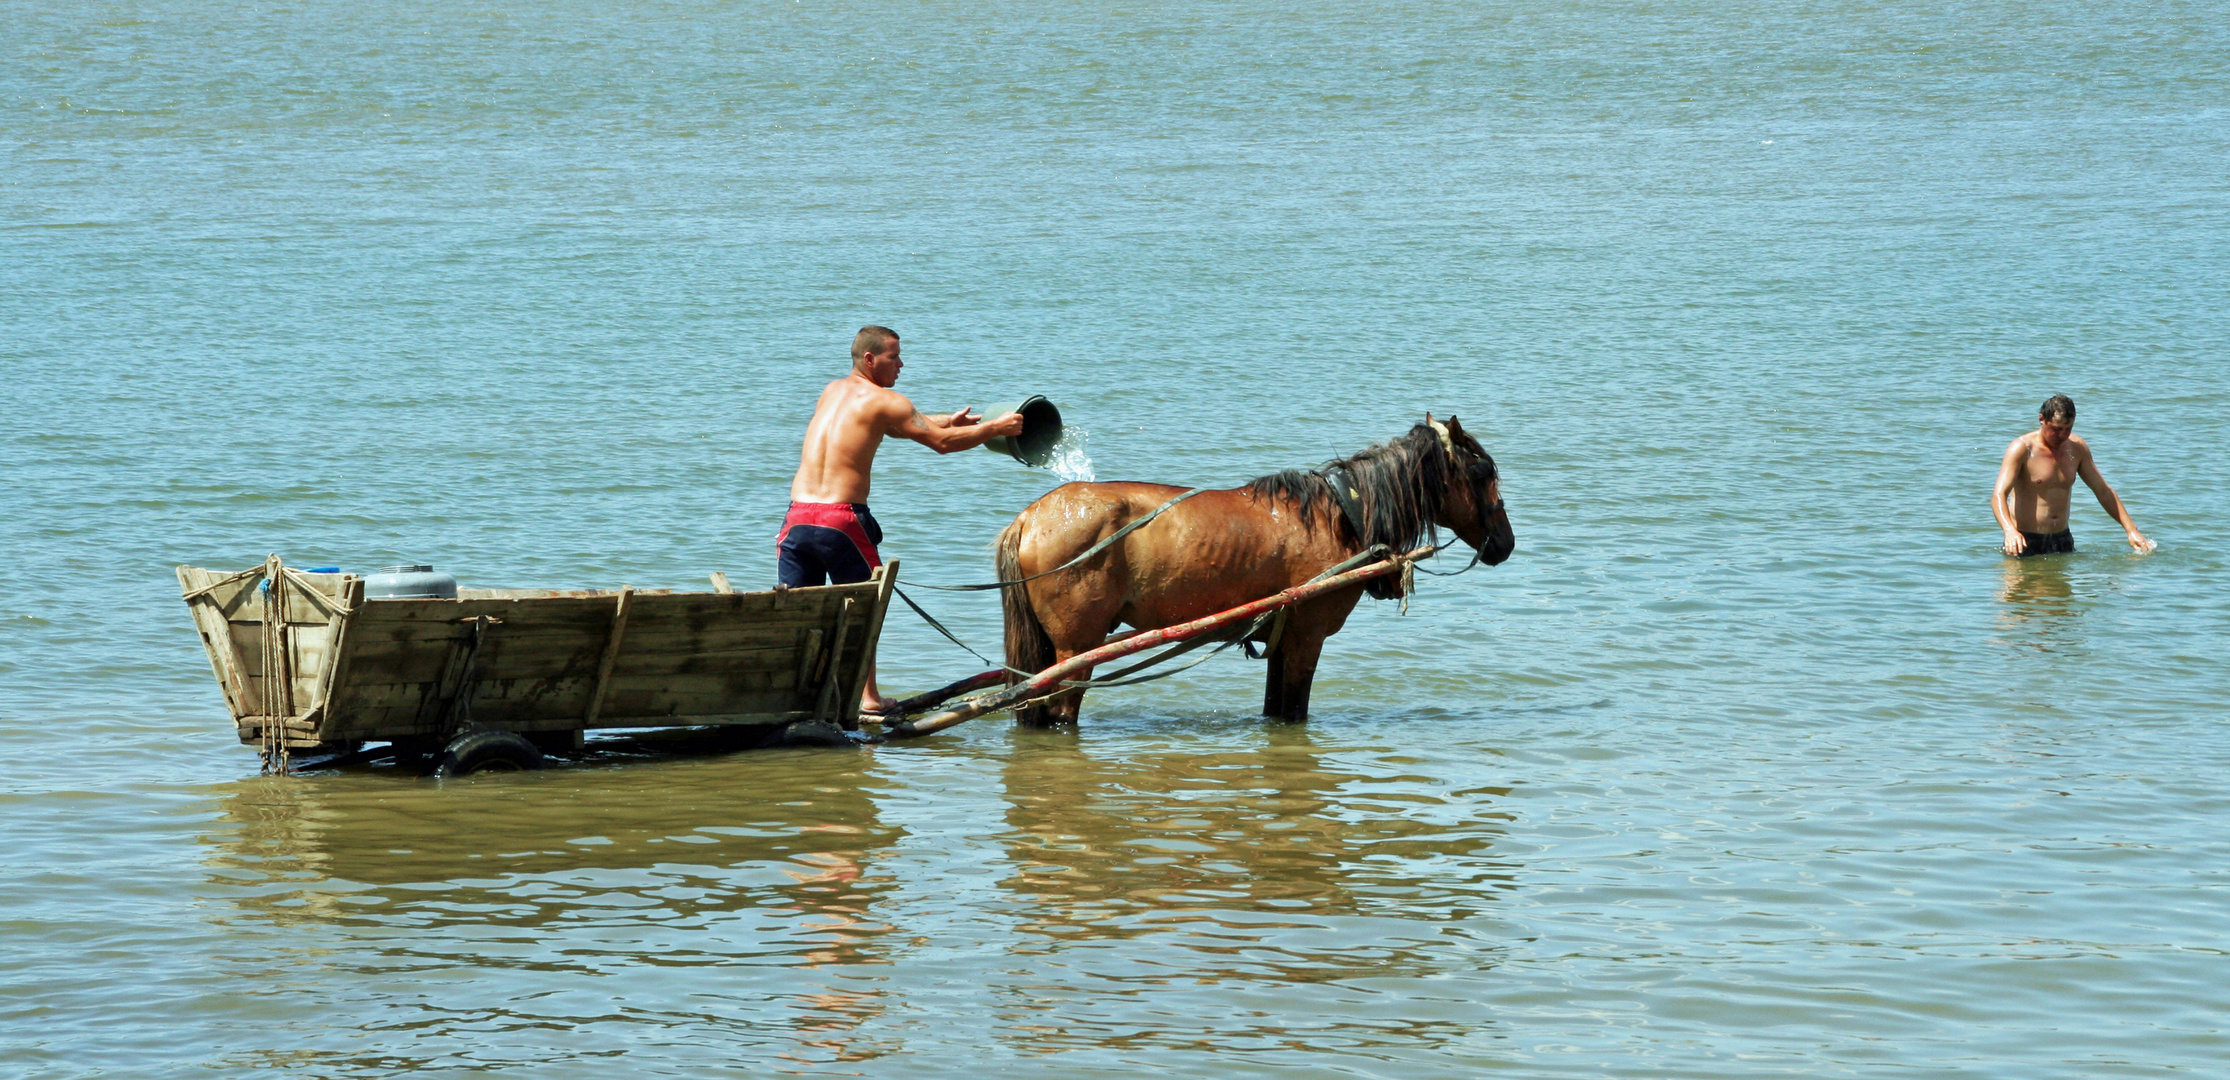 Rumänien, Donau: Eine Erfrischung für Mensch und Tier